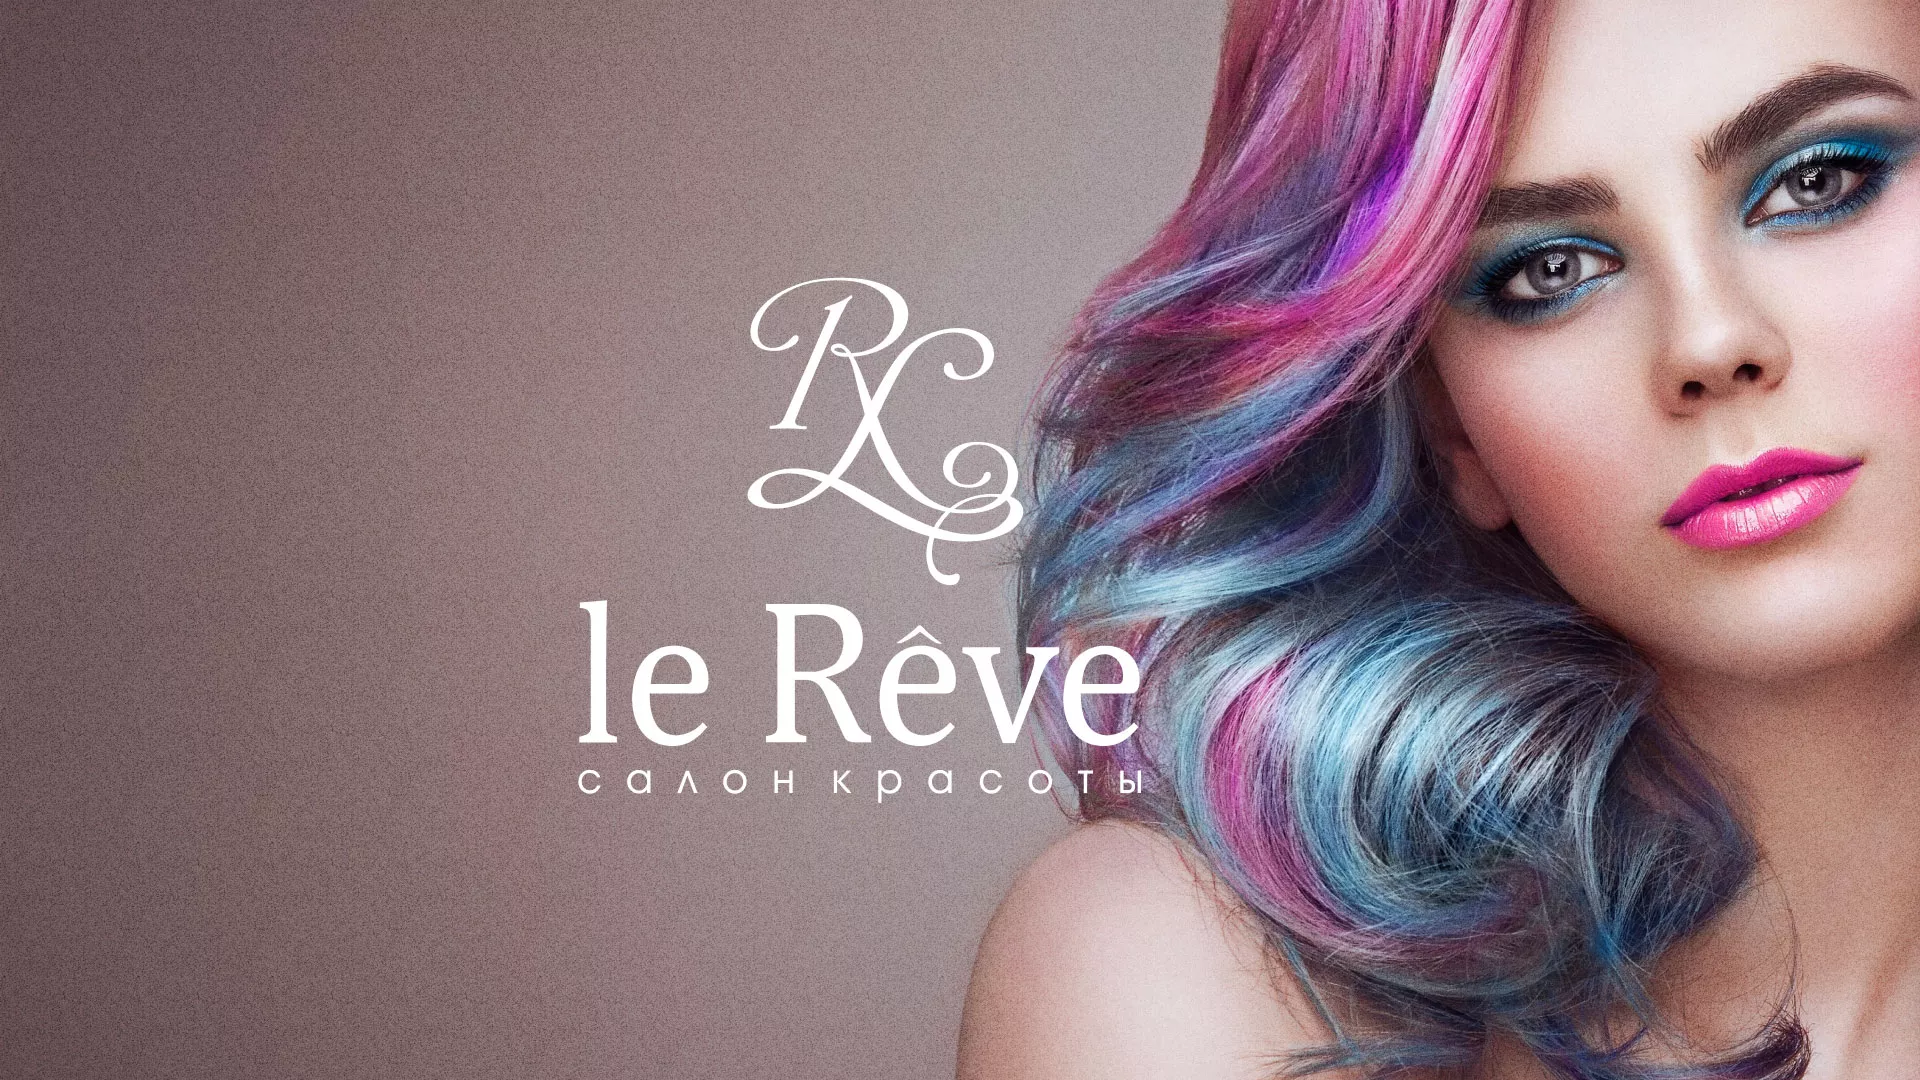 Создание сайта для салона красоты «Le Reve» в Прокопьевске